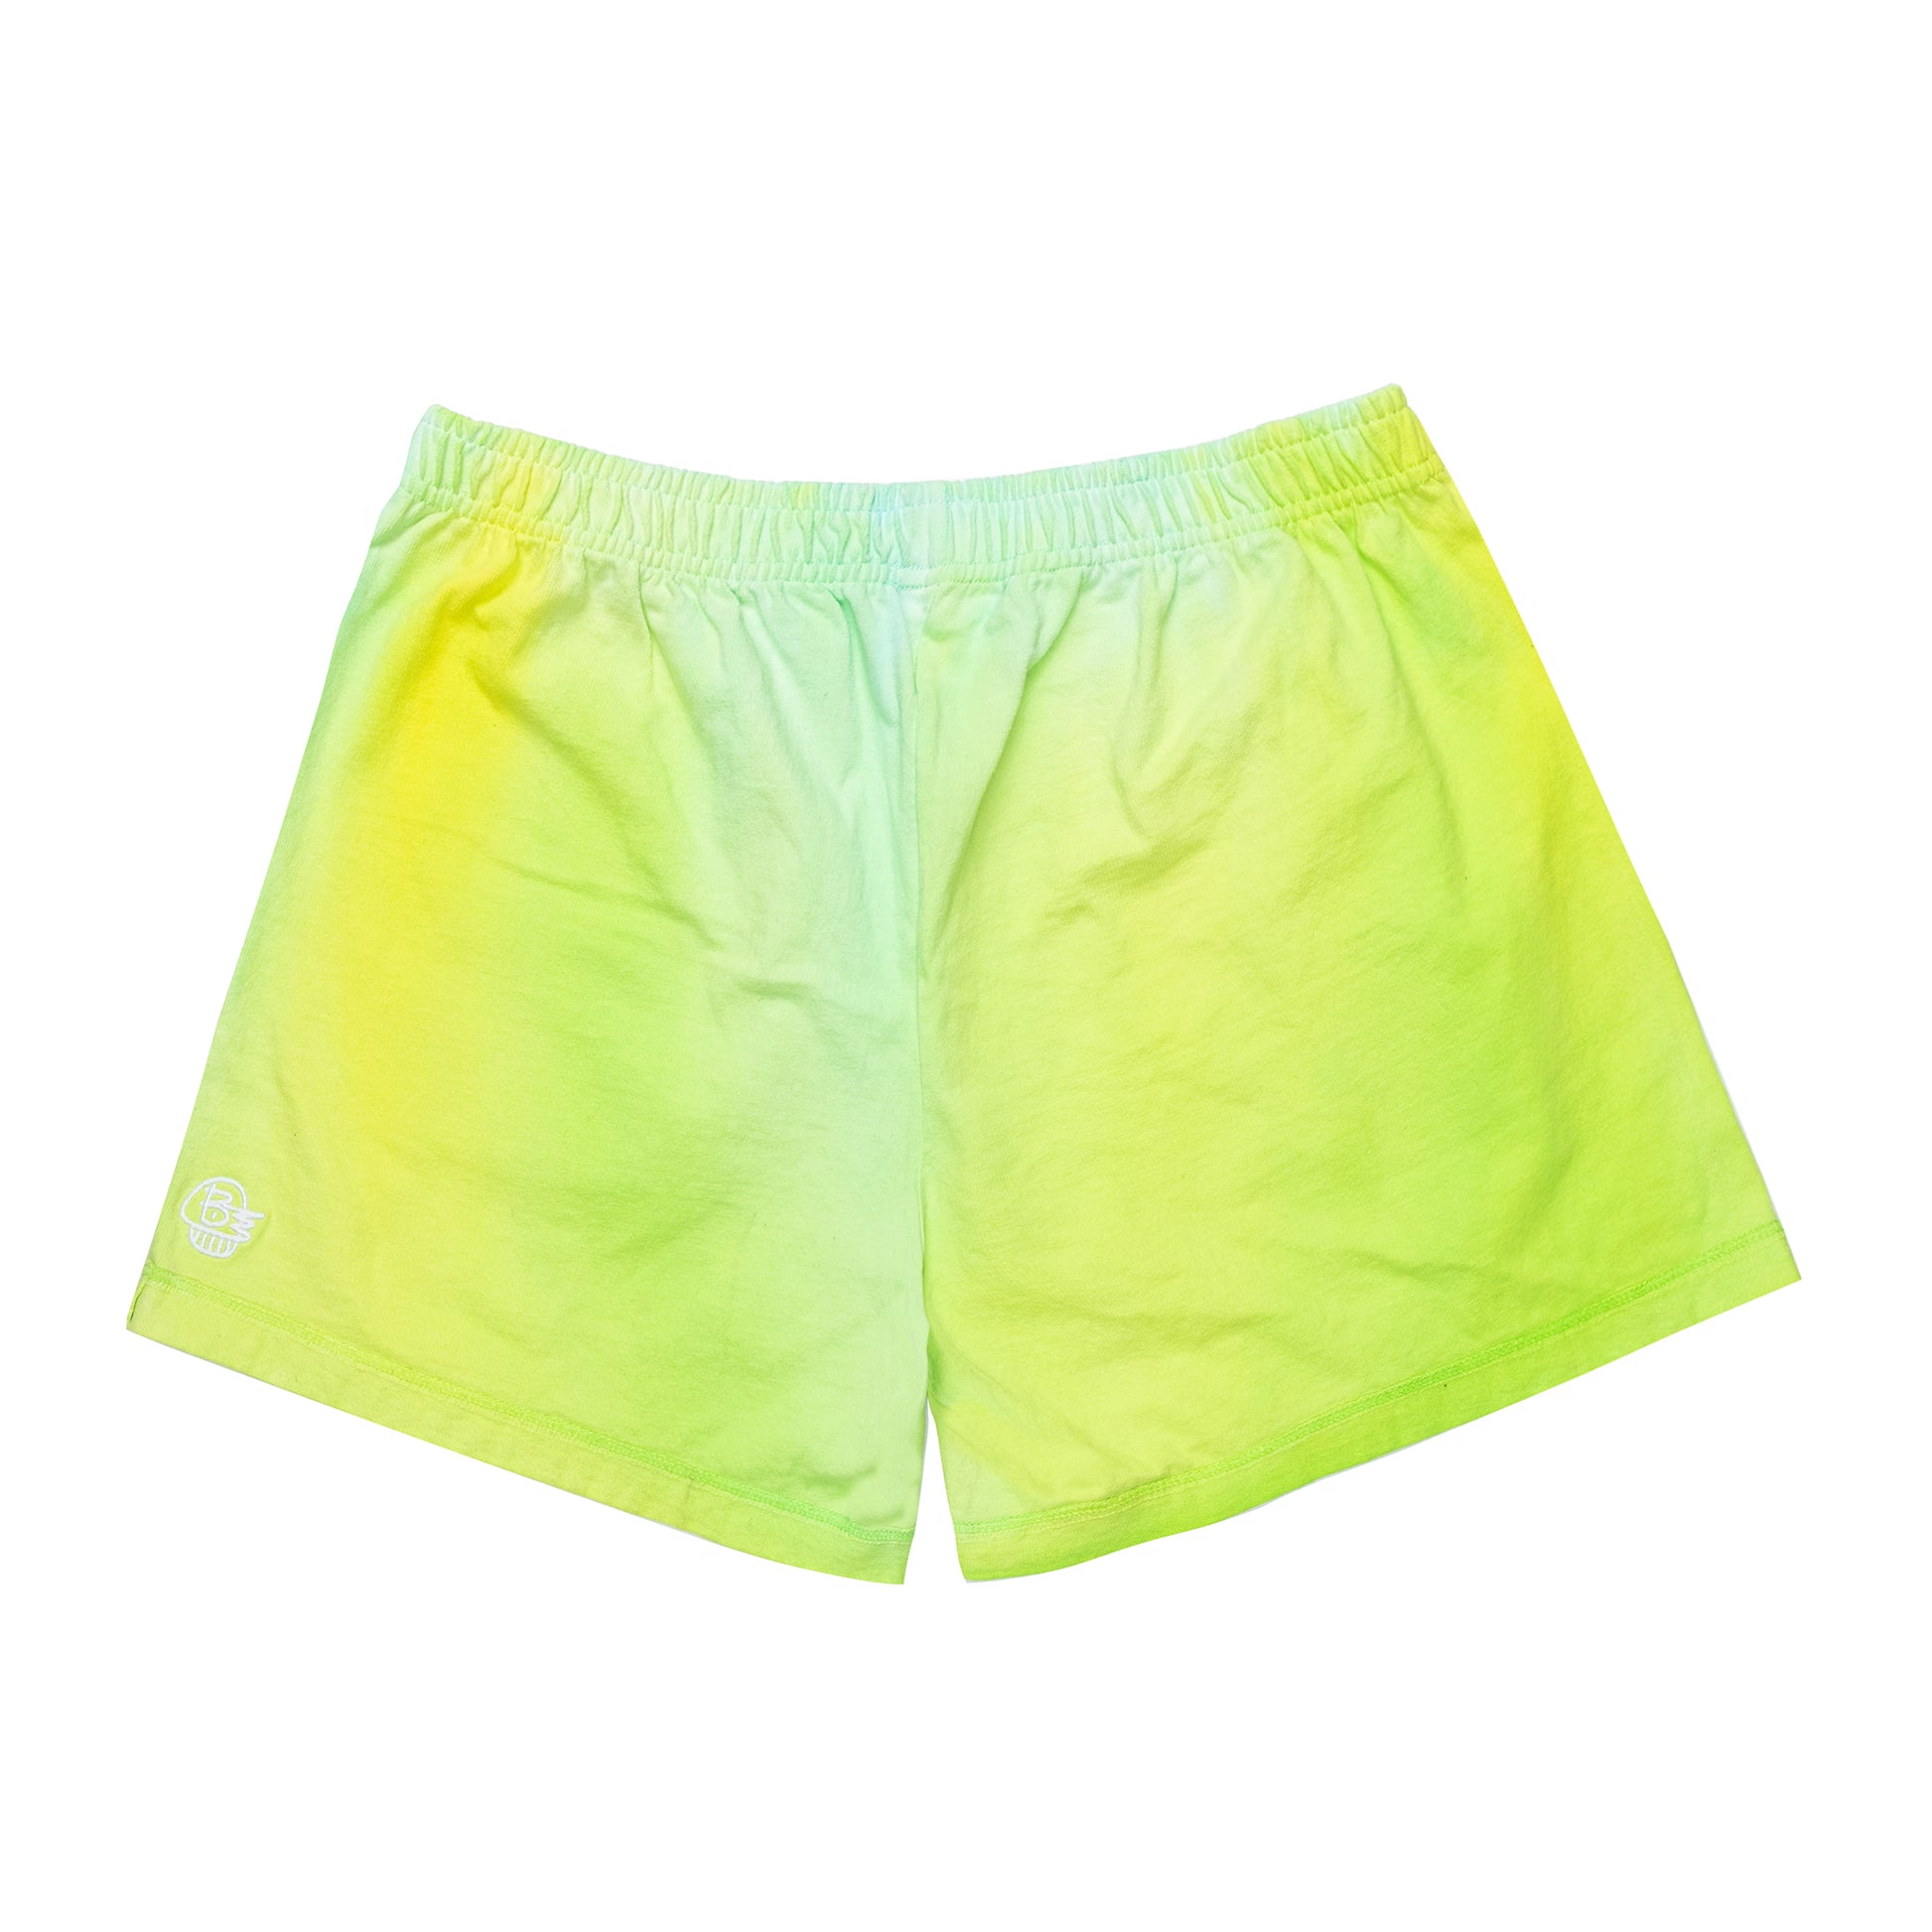 Men's Lounge Shorts 